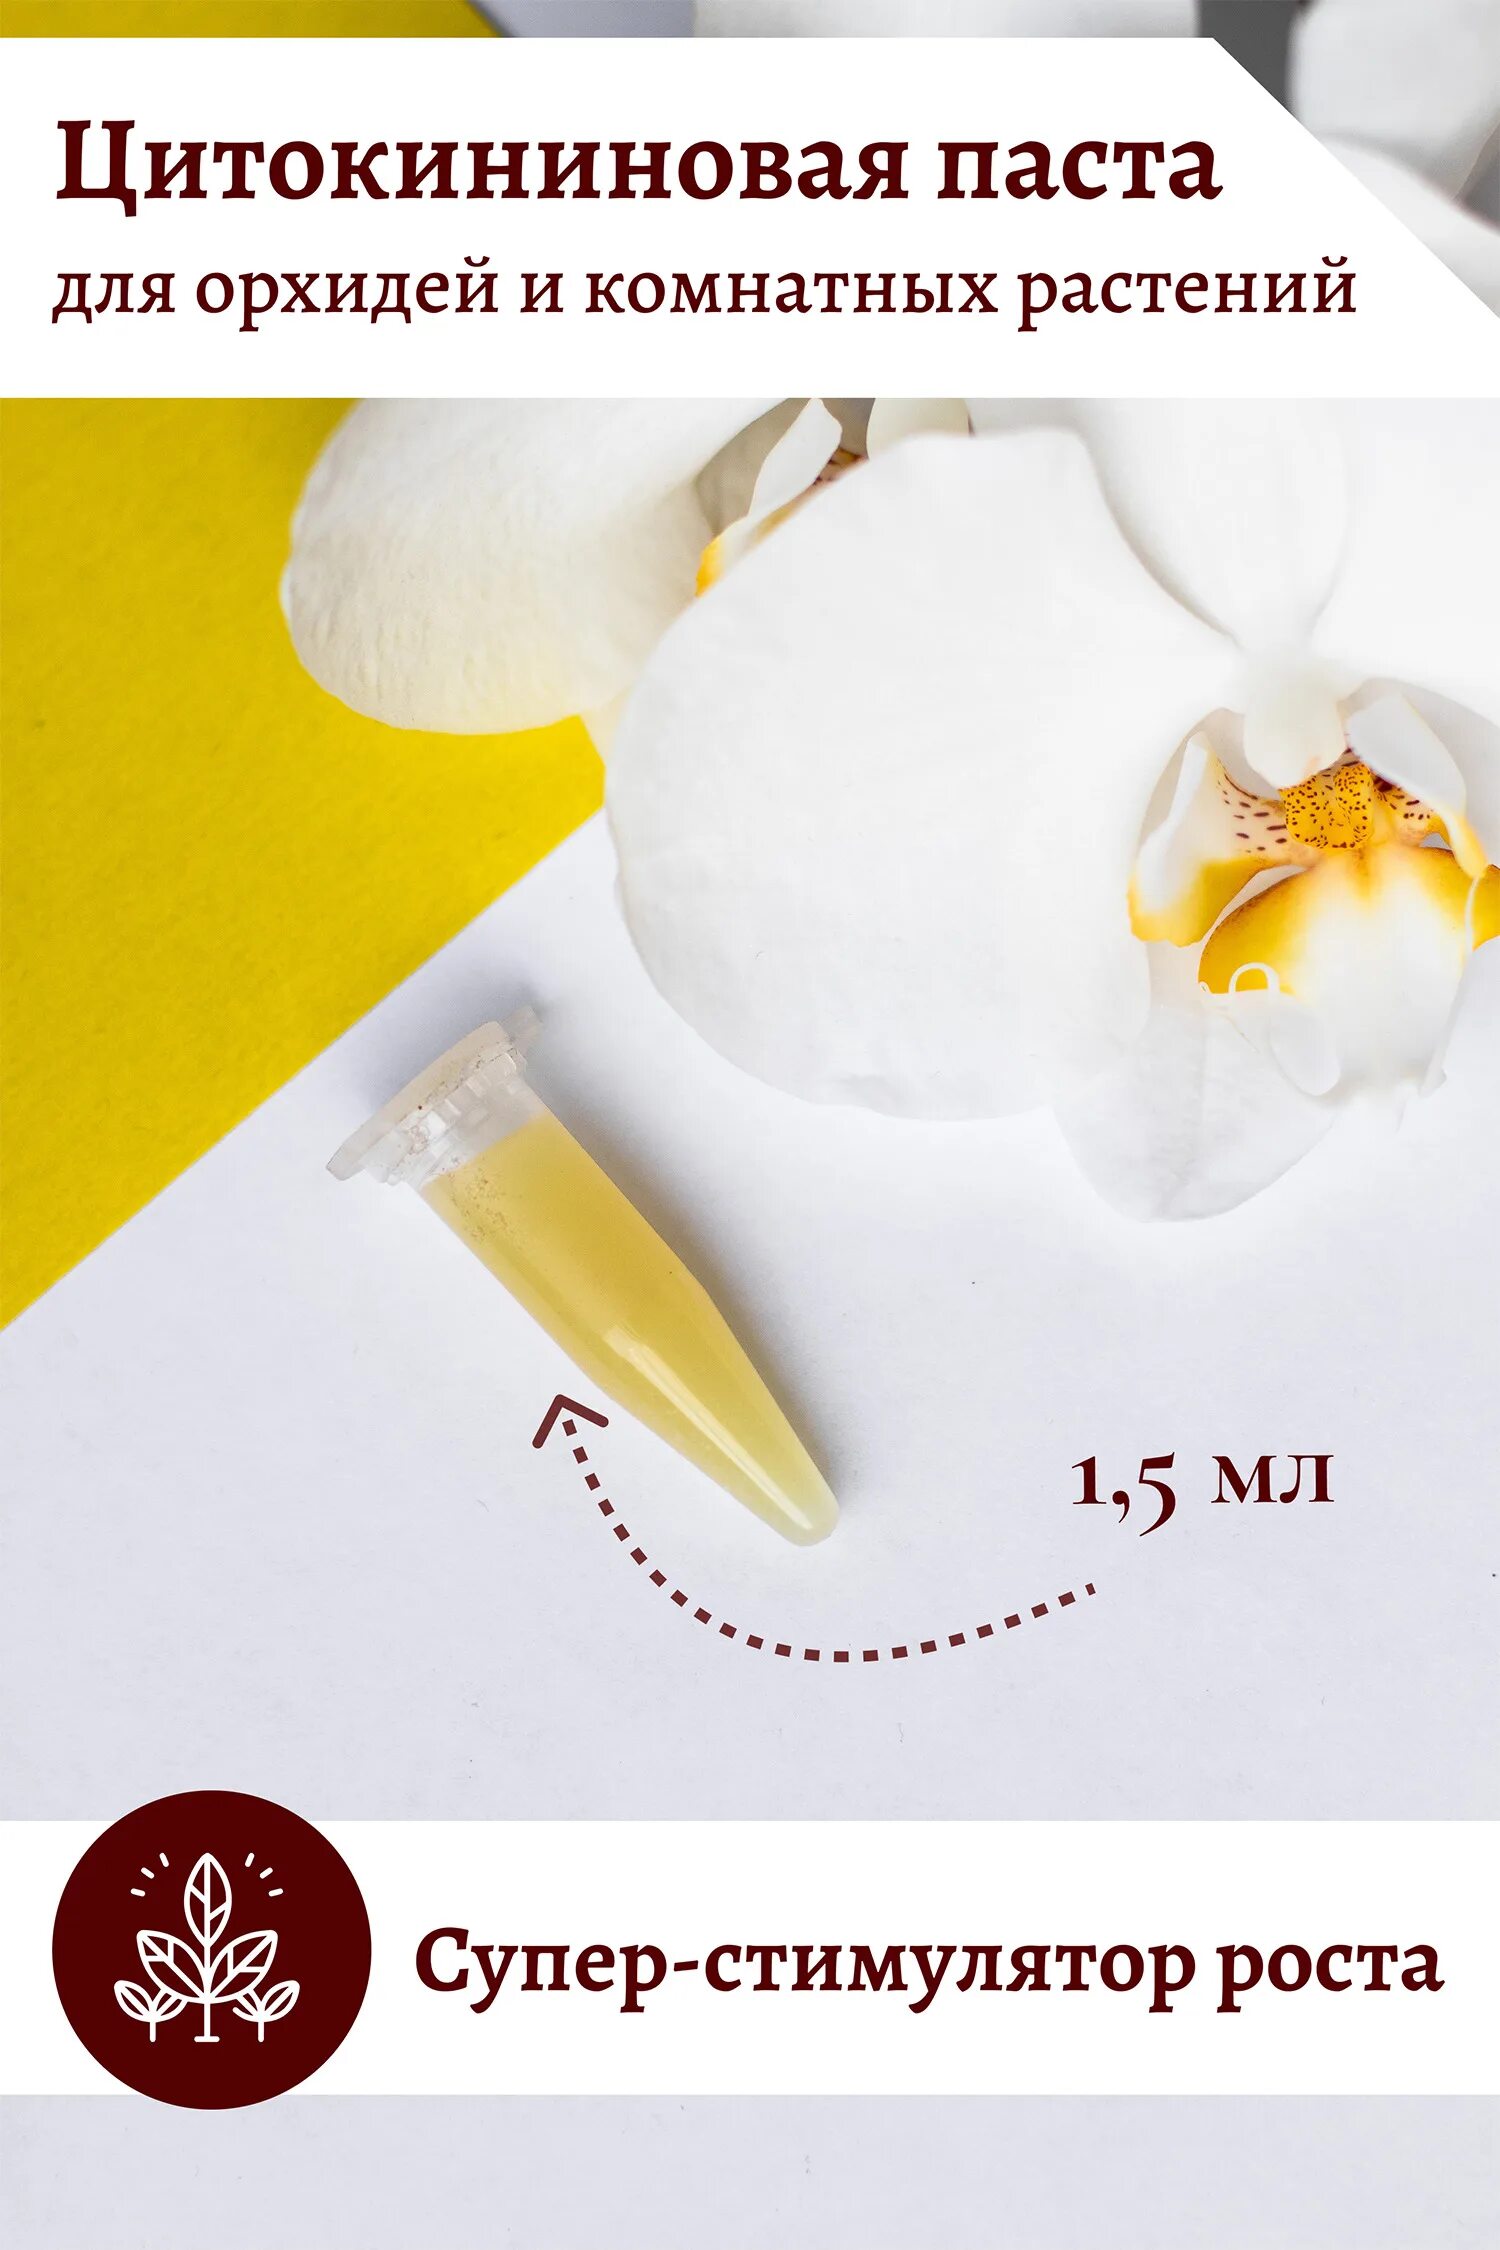 Паста цитокининовая EFFECTBIO 1,5мл. Цитокининовая паста для орхидей. Паста для цветов цитокининовая. Паста для орхидей для размножения цитокининовая.